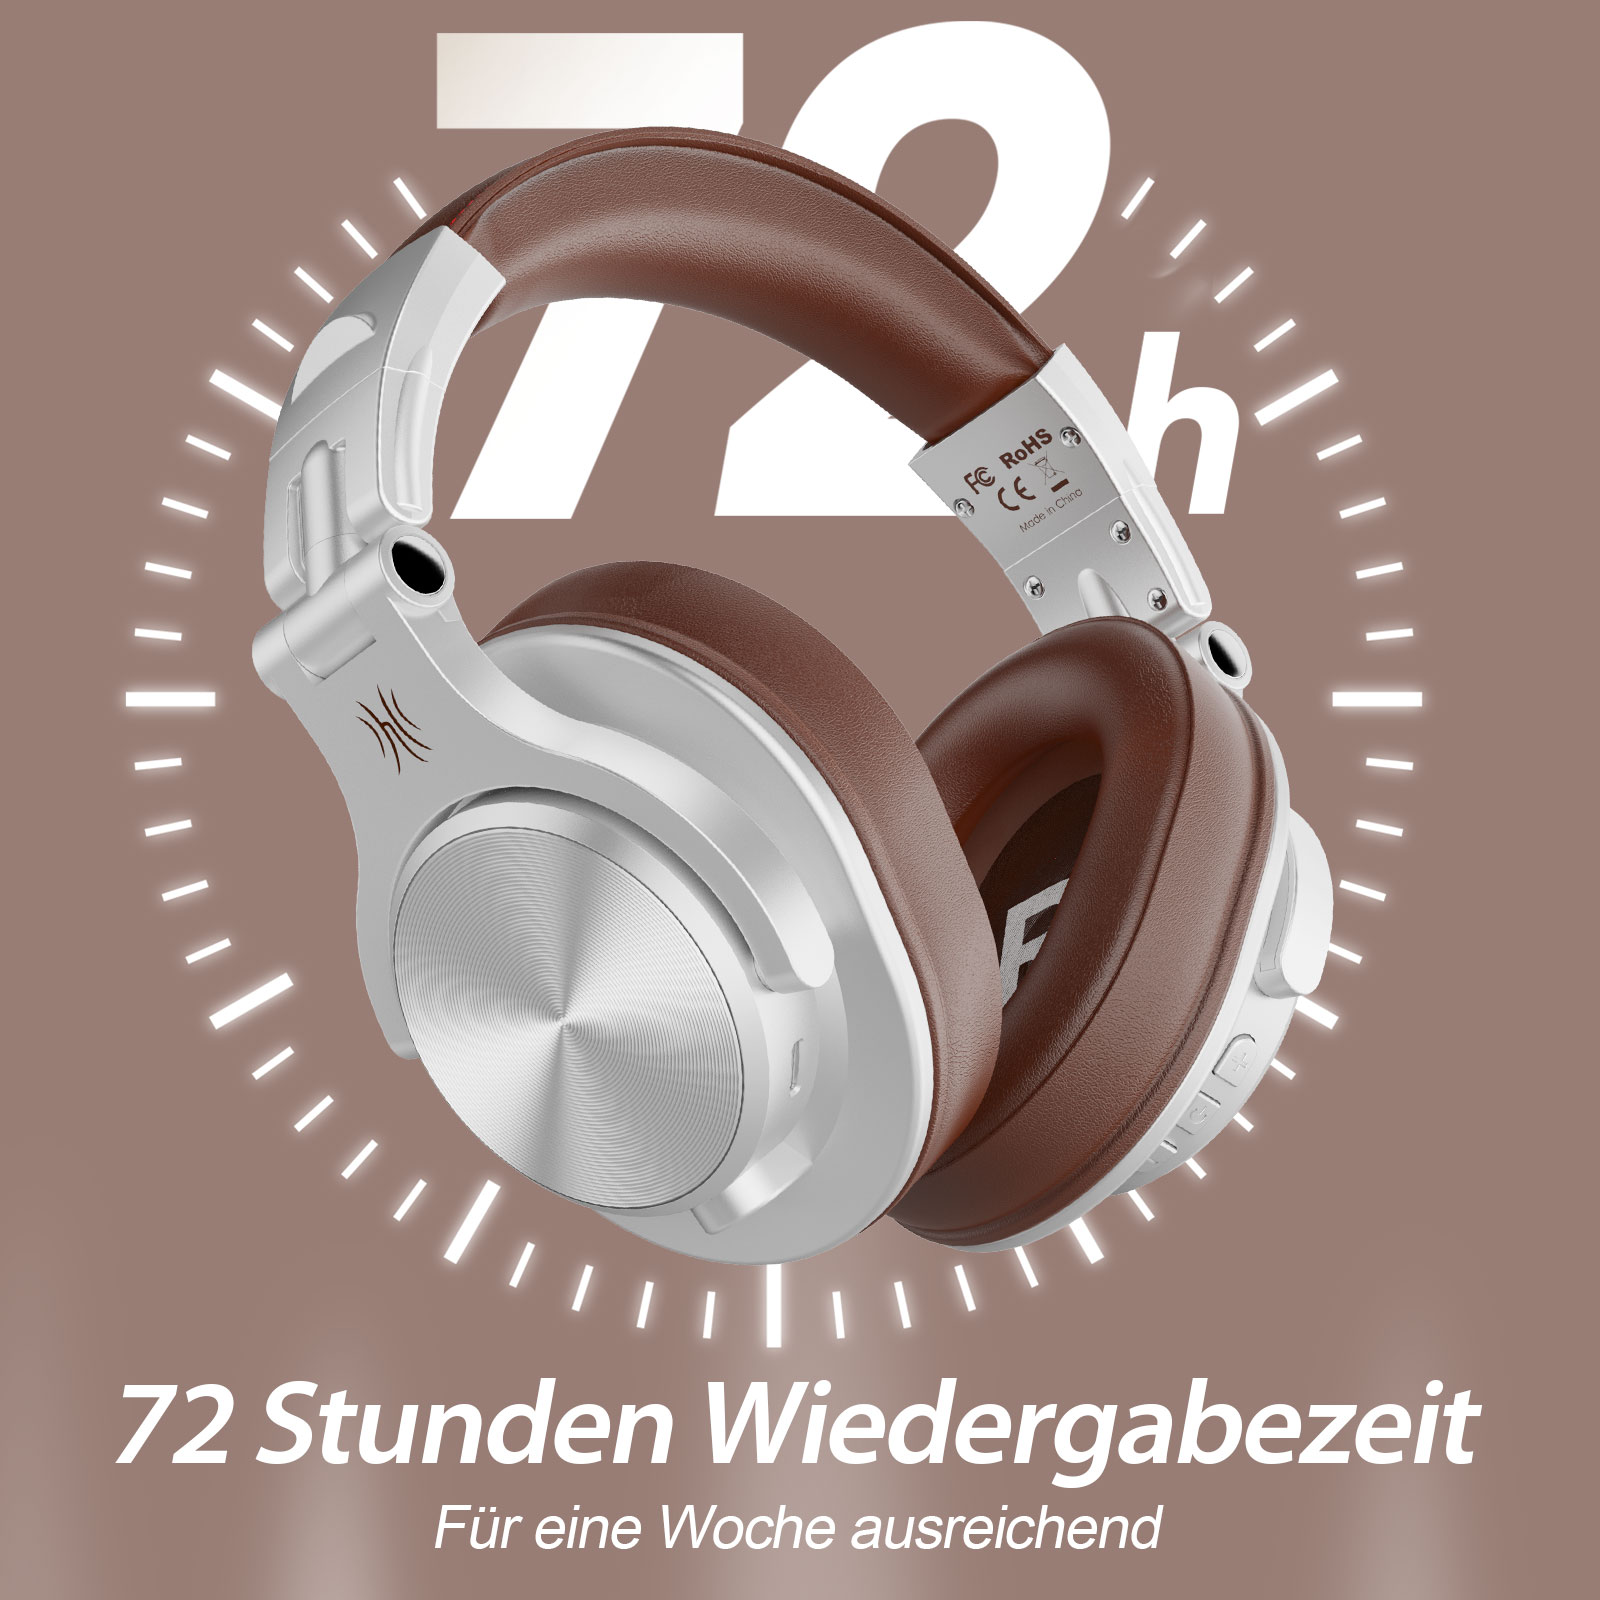 A70, Bluetooth ONEODIO Over-ear Silber Kopfhörer